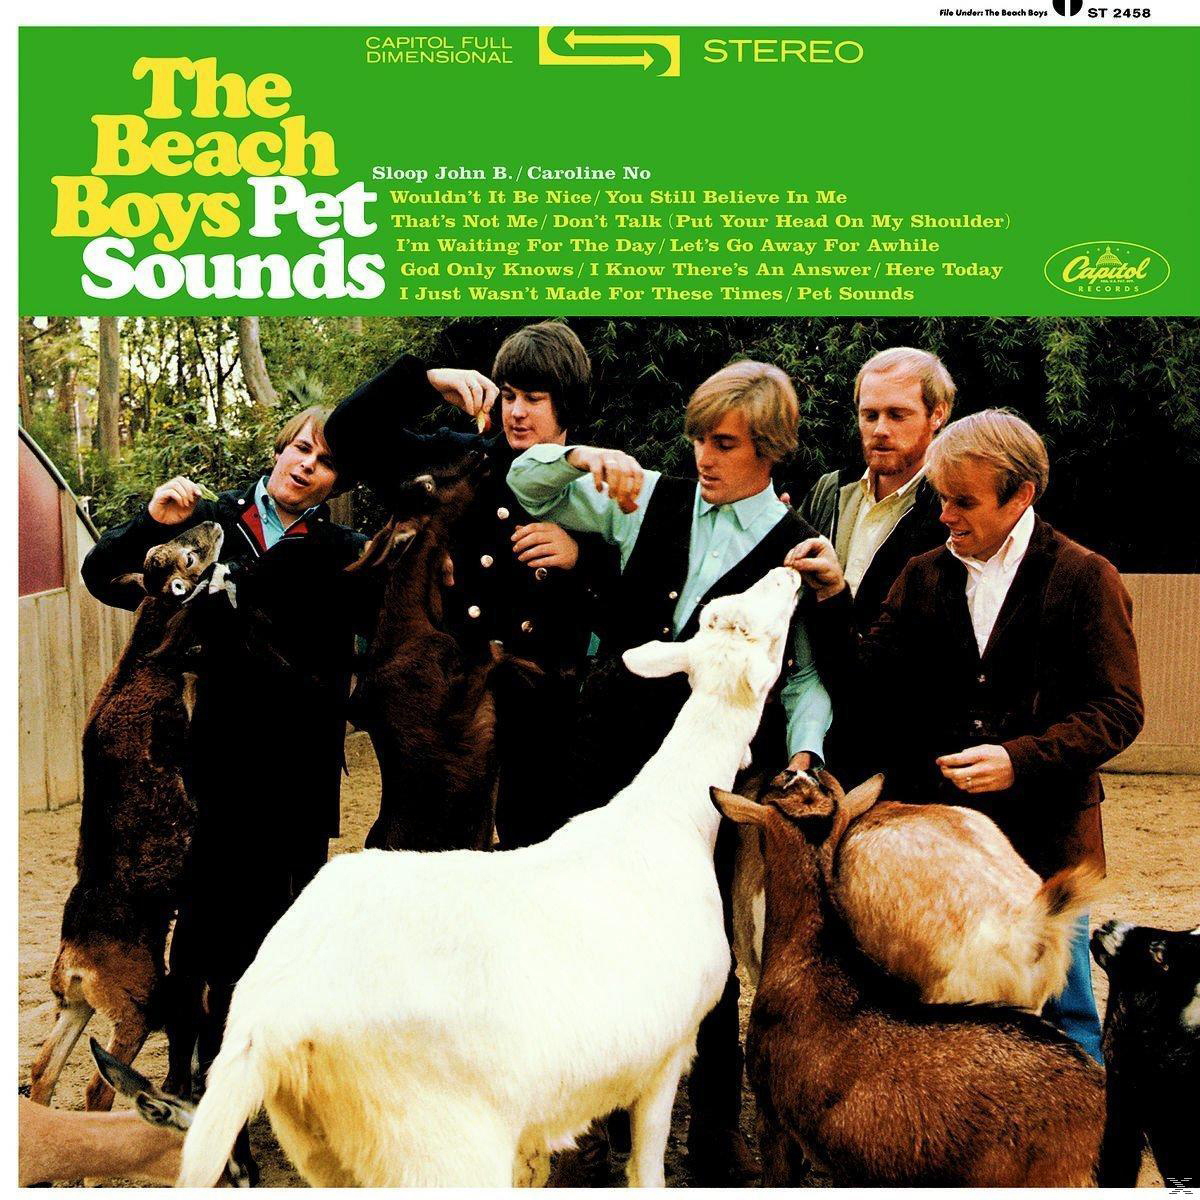 The Beach Boys - Pet Vinyl Reissue) 180g Sounds - (Vinyl) (Stereo